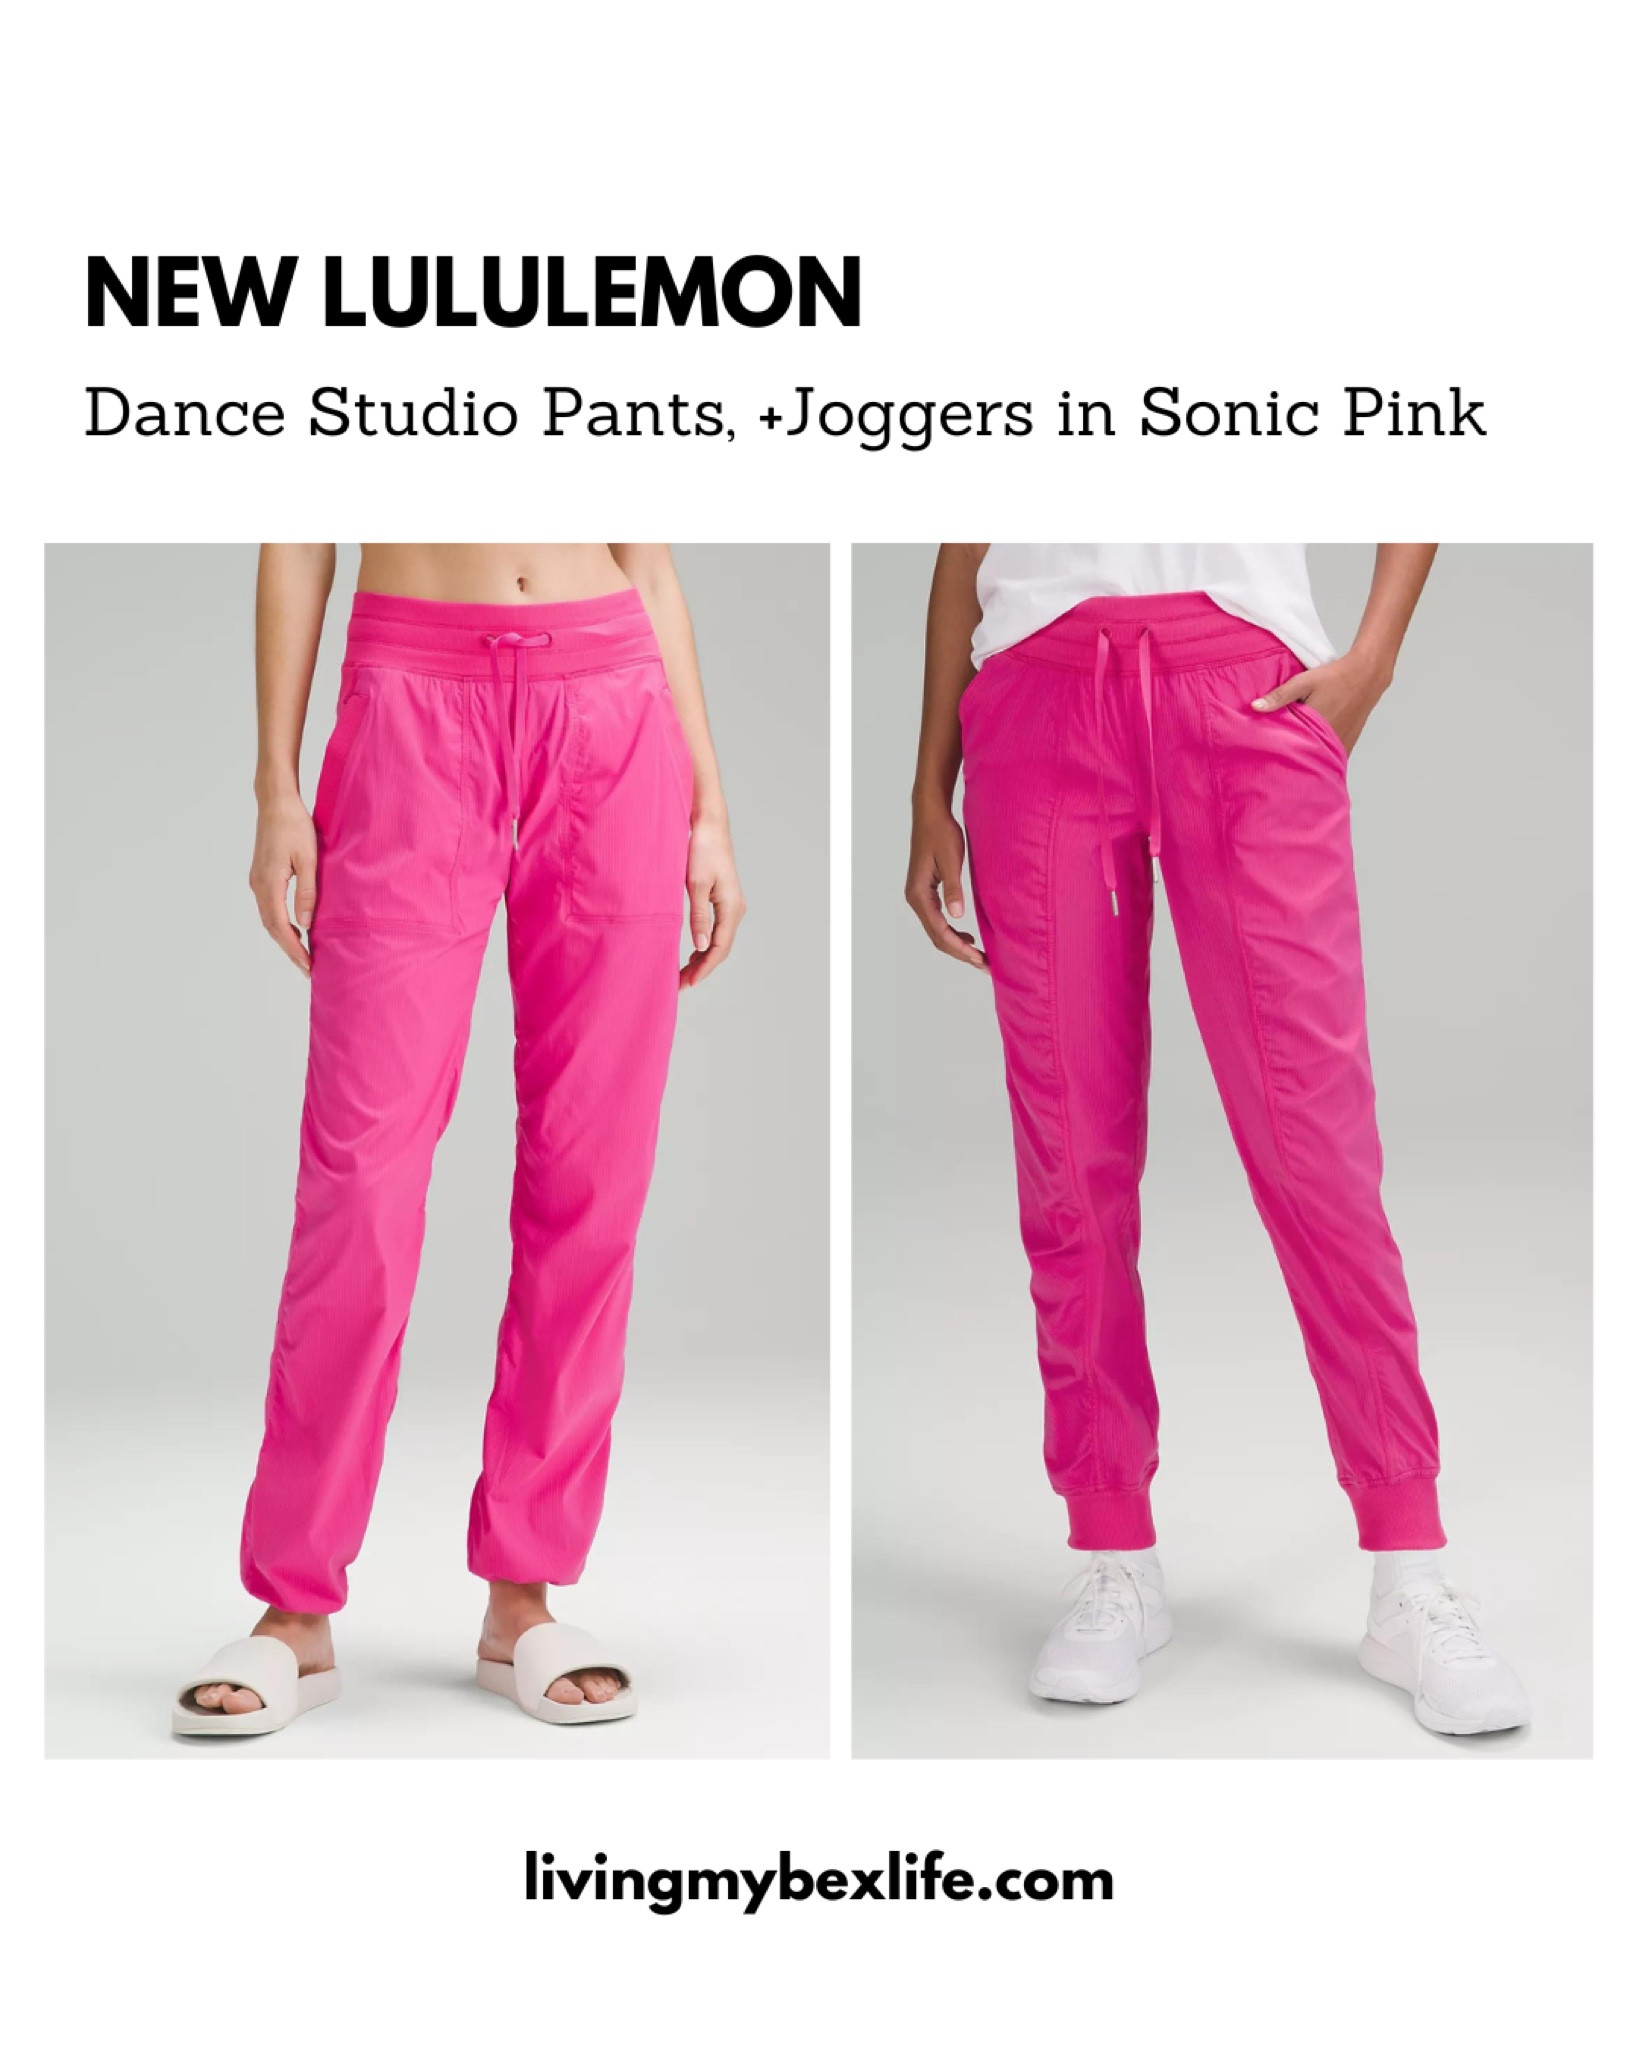 Lululemon Dance Studio Mid-Rise Jogger *Full Length - Sonic Pink